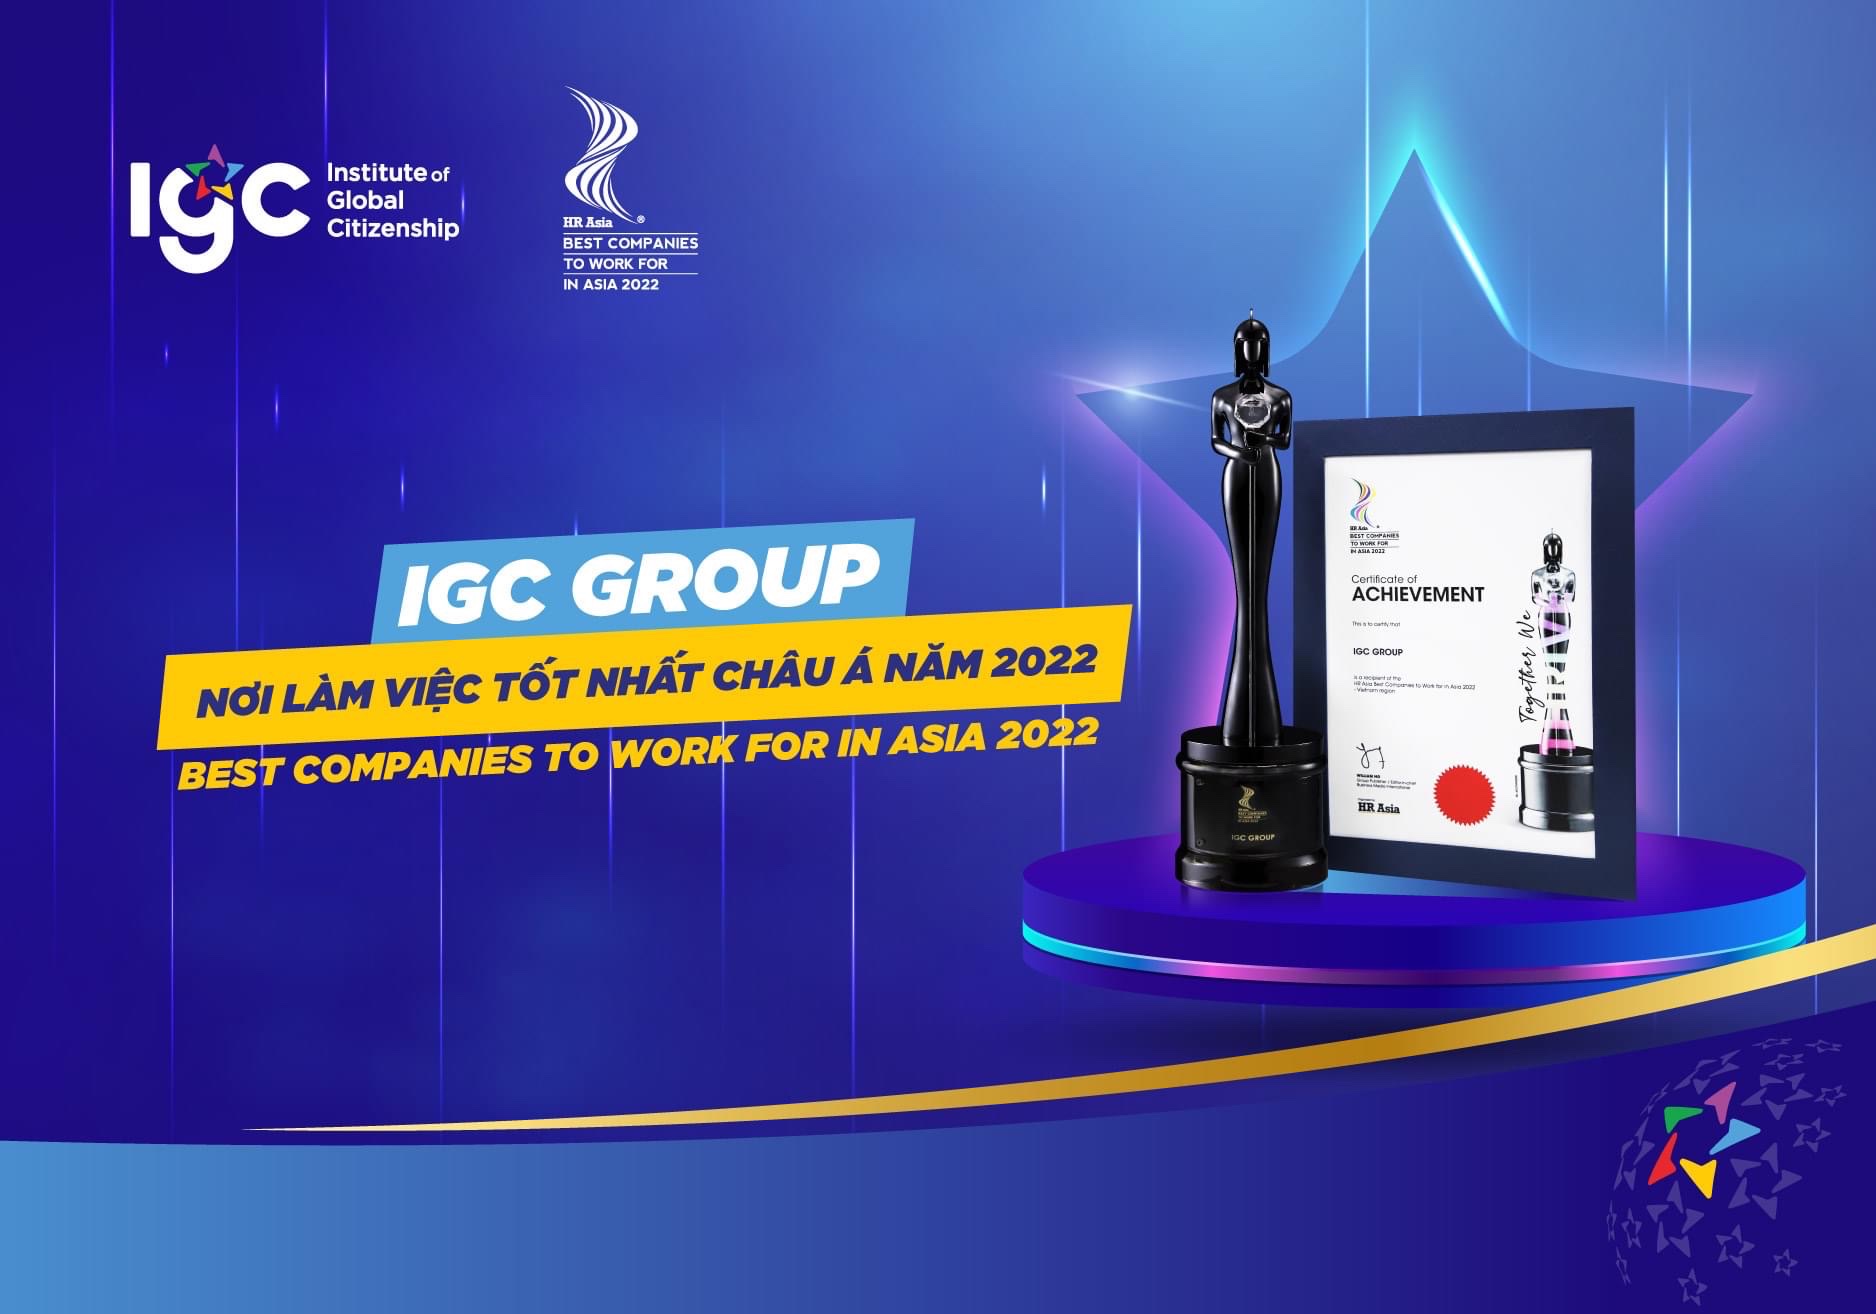 IGC trở thành "Nơi làm việc tốt nhất châu Á năm 2022"